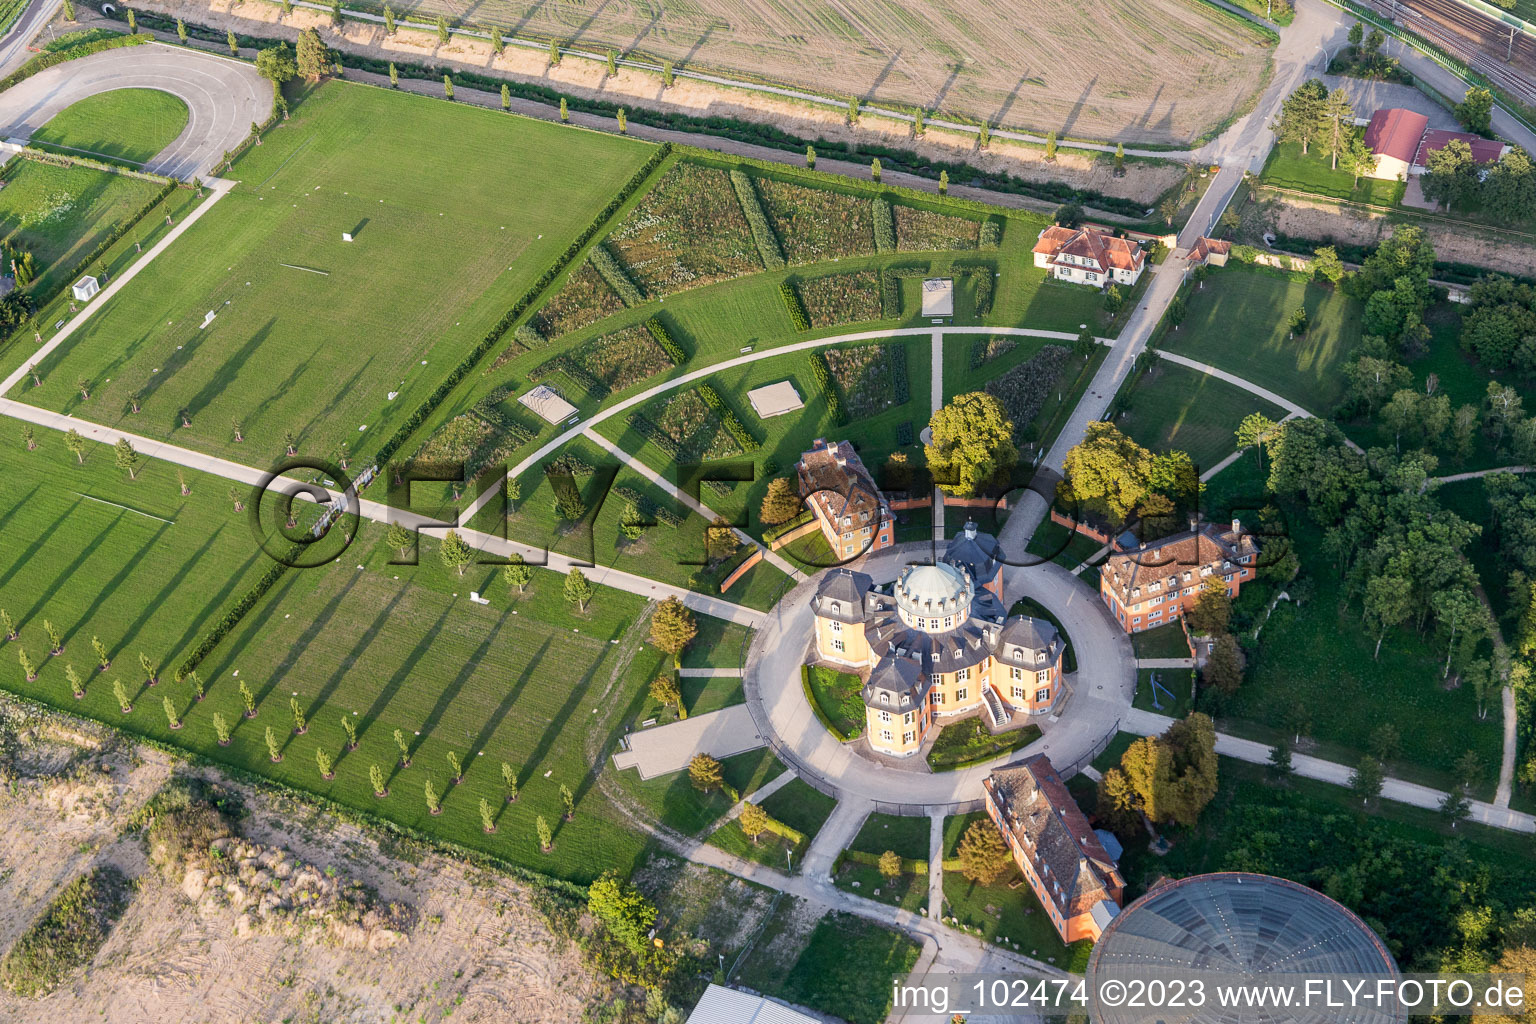 Waghäusel im Bundesland Baden-Württemberg, Deutschland aus der Drohnenperspektive